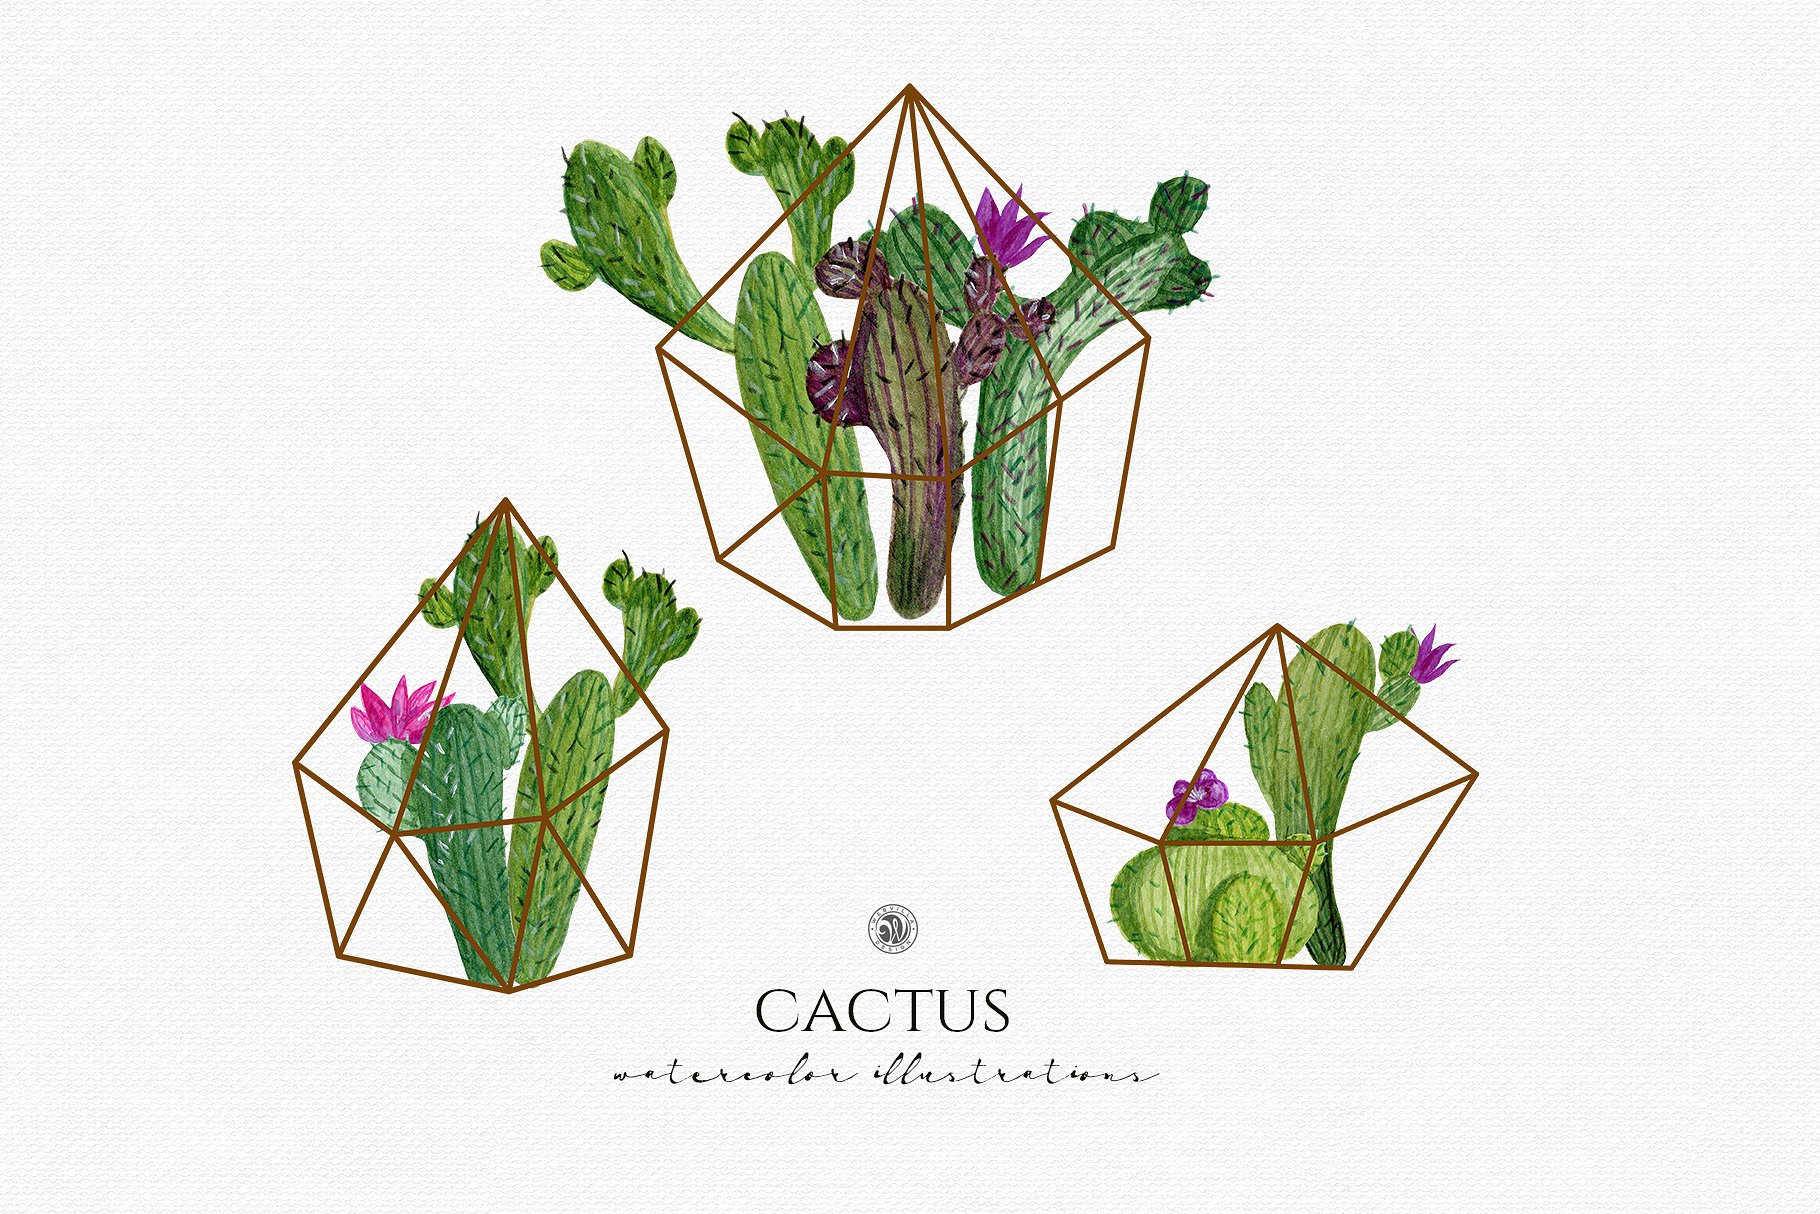 水彩仙人掌插图合集 Cactus watercolor illustrations插图(2)